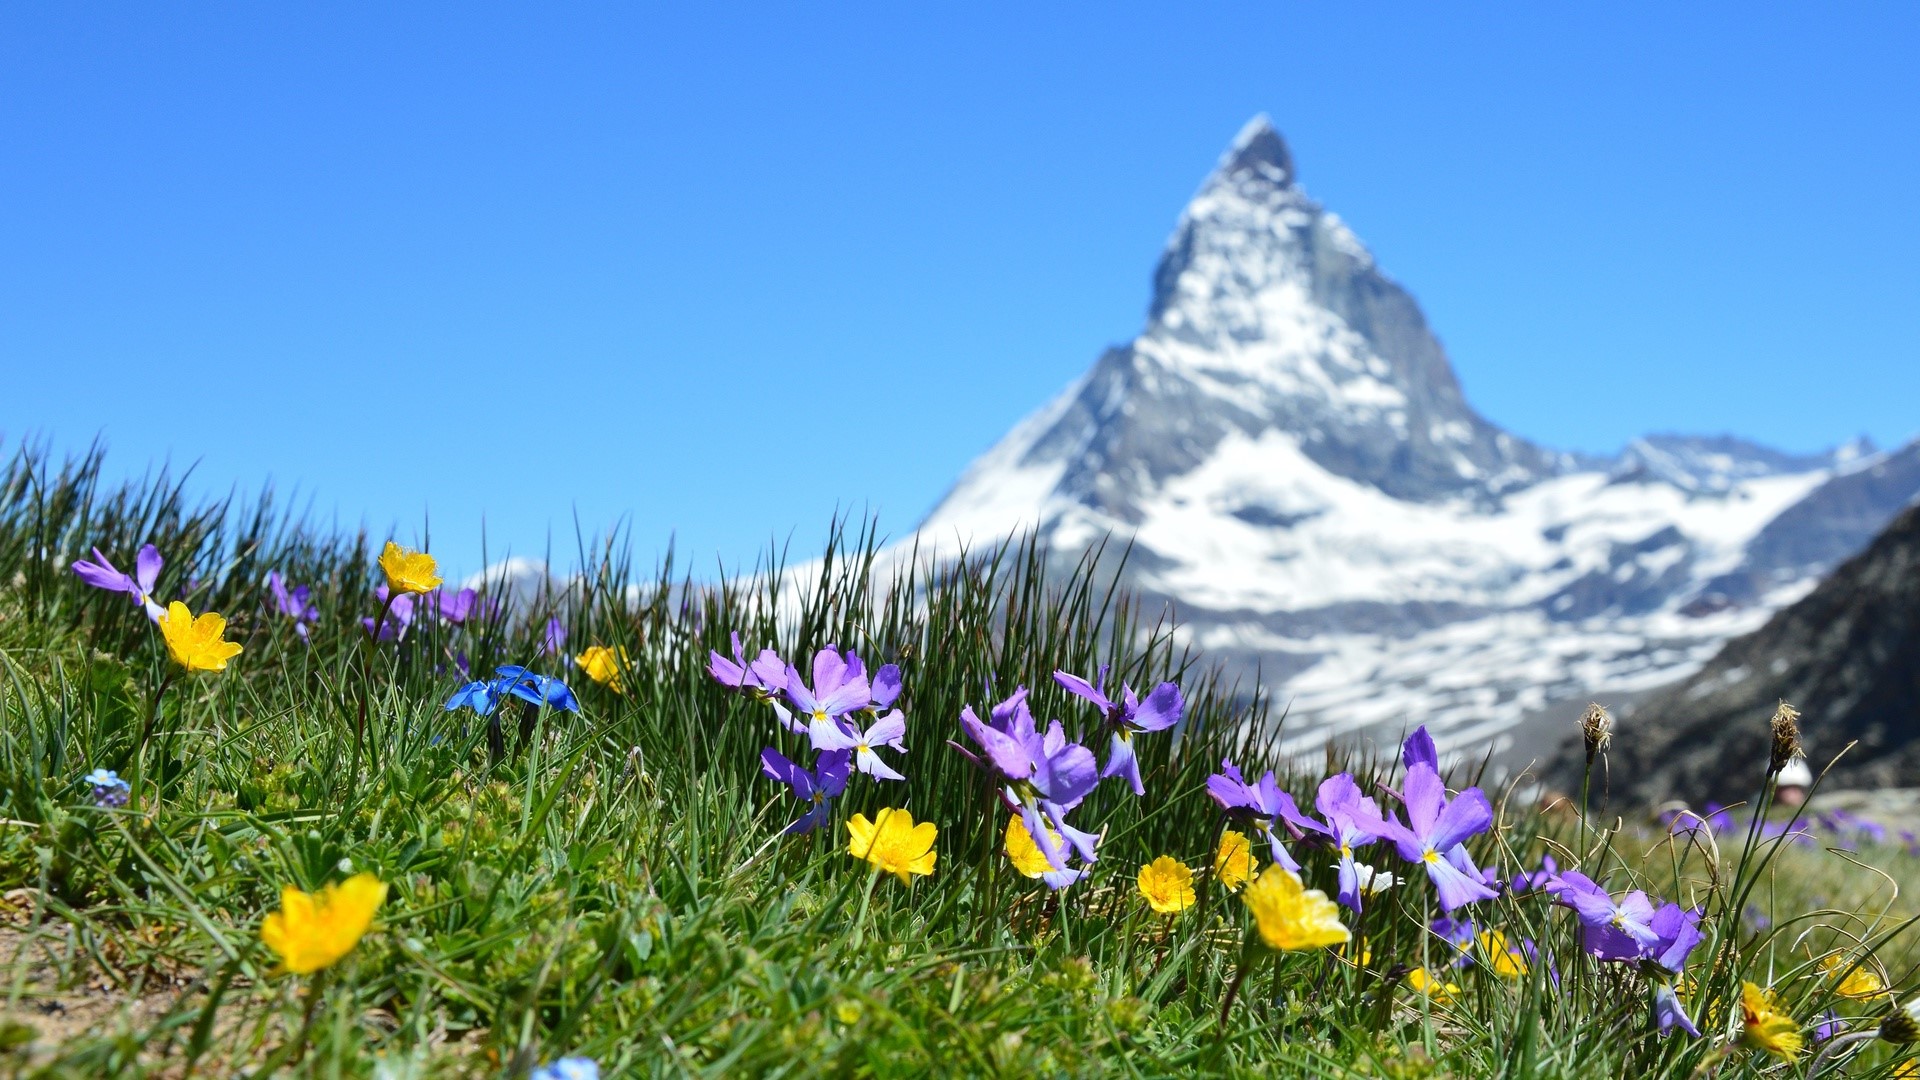 Grass Nature Photography Matterhorn Switzerland Landscape Mountains Snow Sky Hills Summer Plants 1920x1080